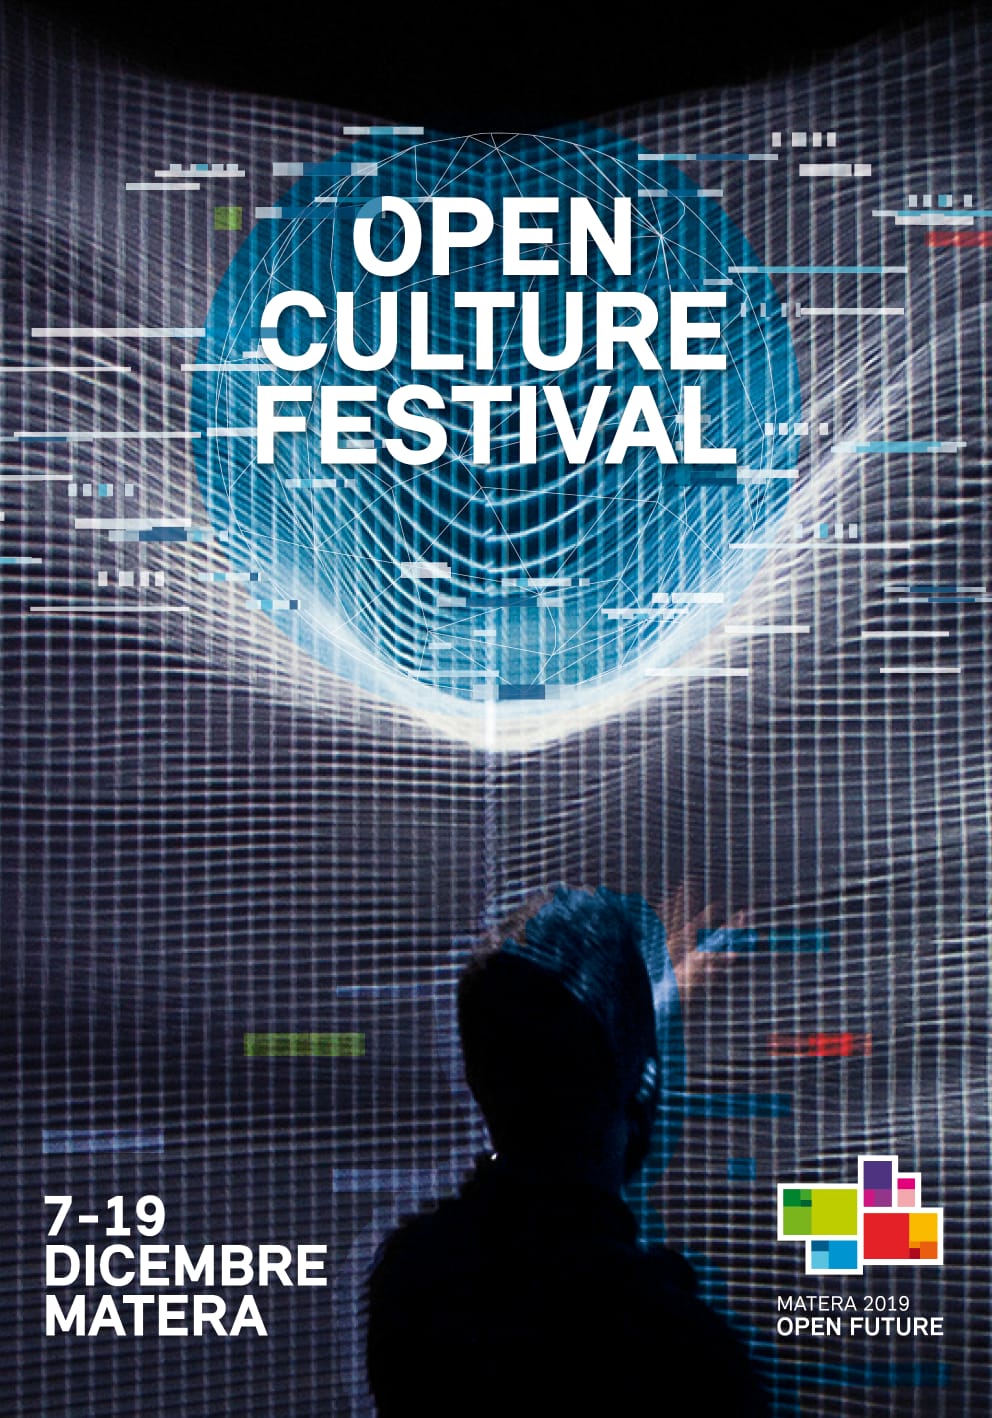 Matera 2019, la conferenza “Open Future” apre l’Open Culture Festival